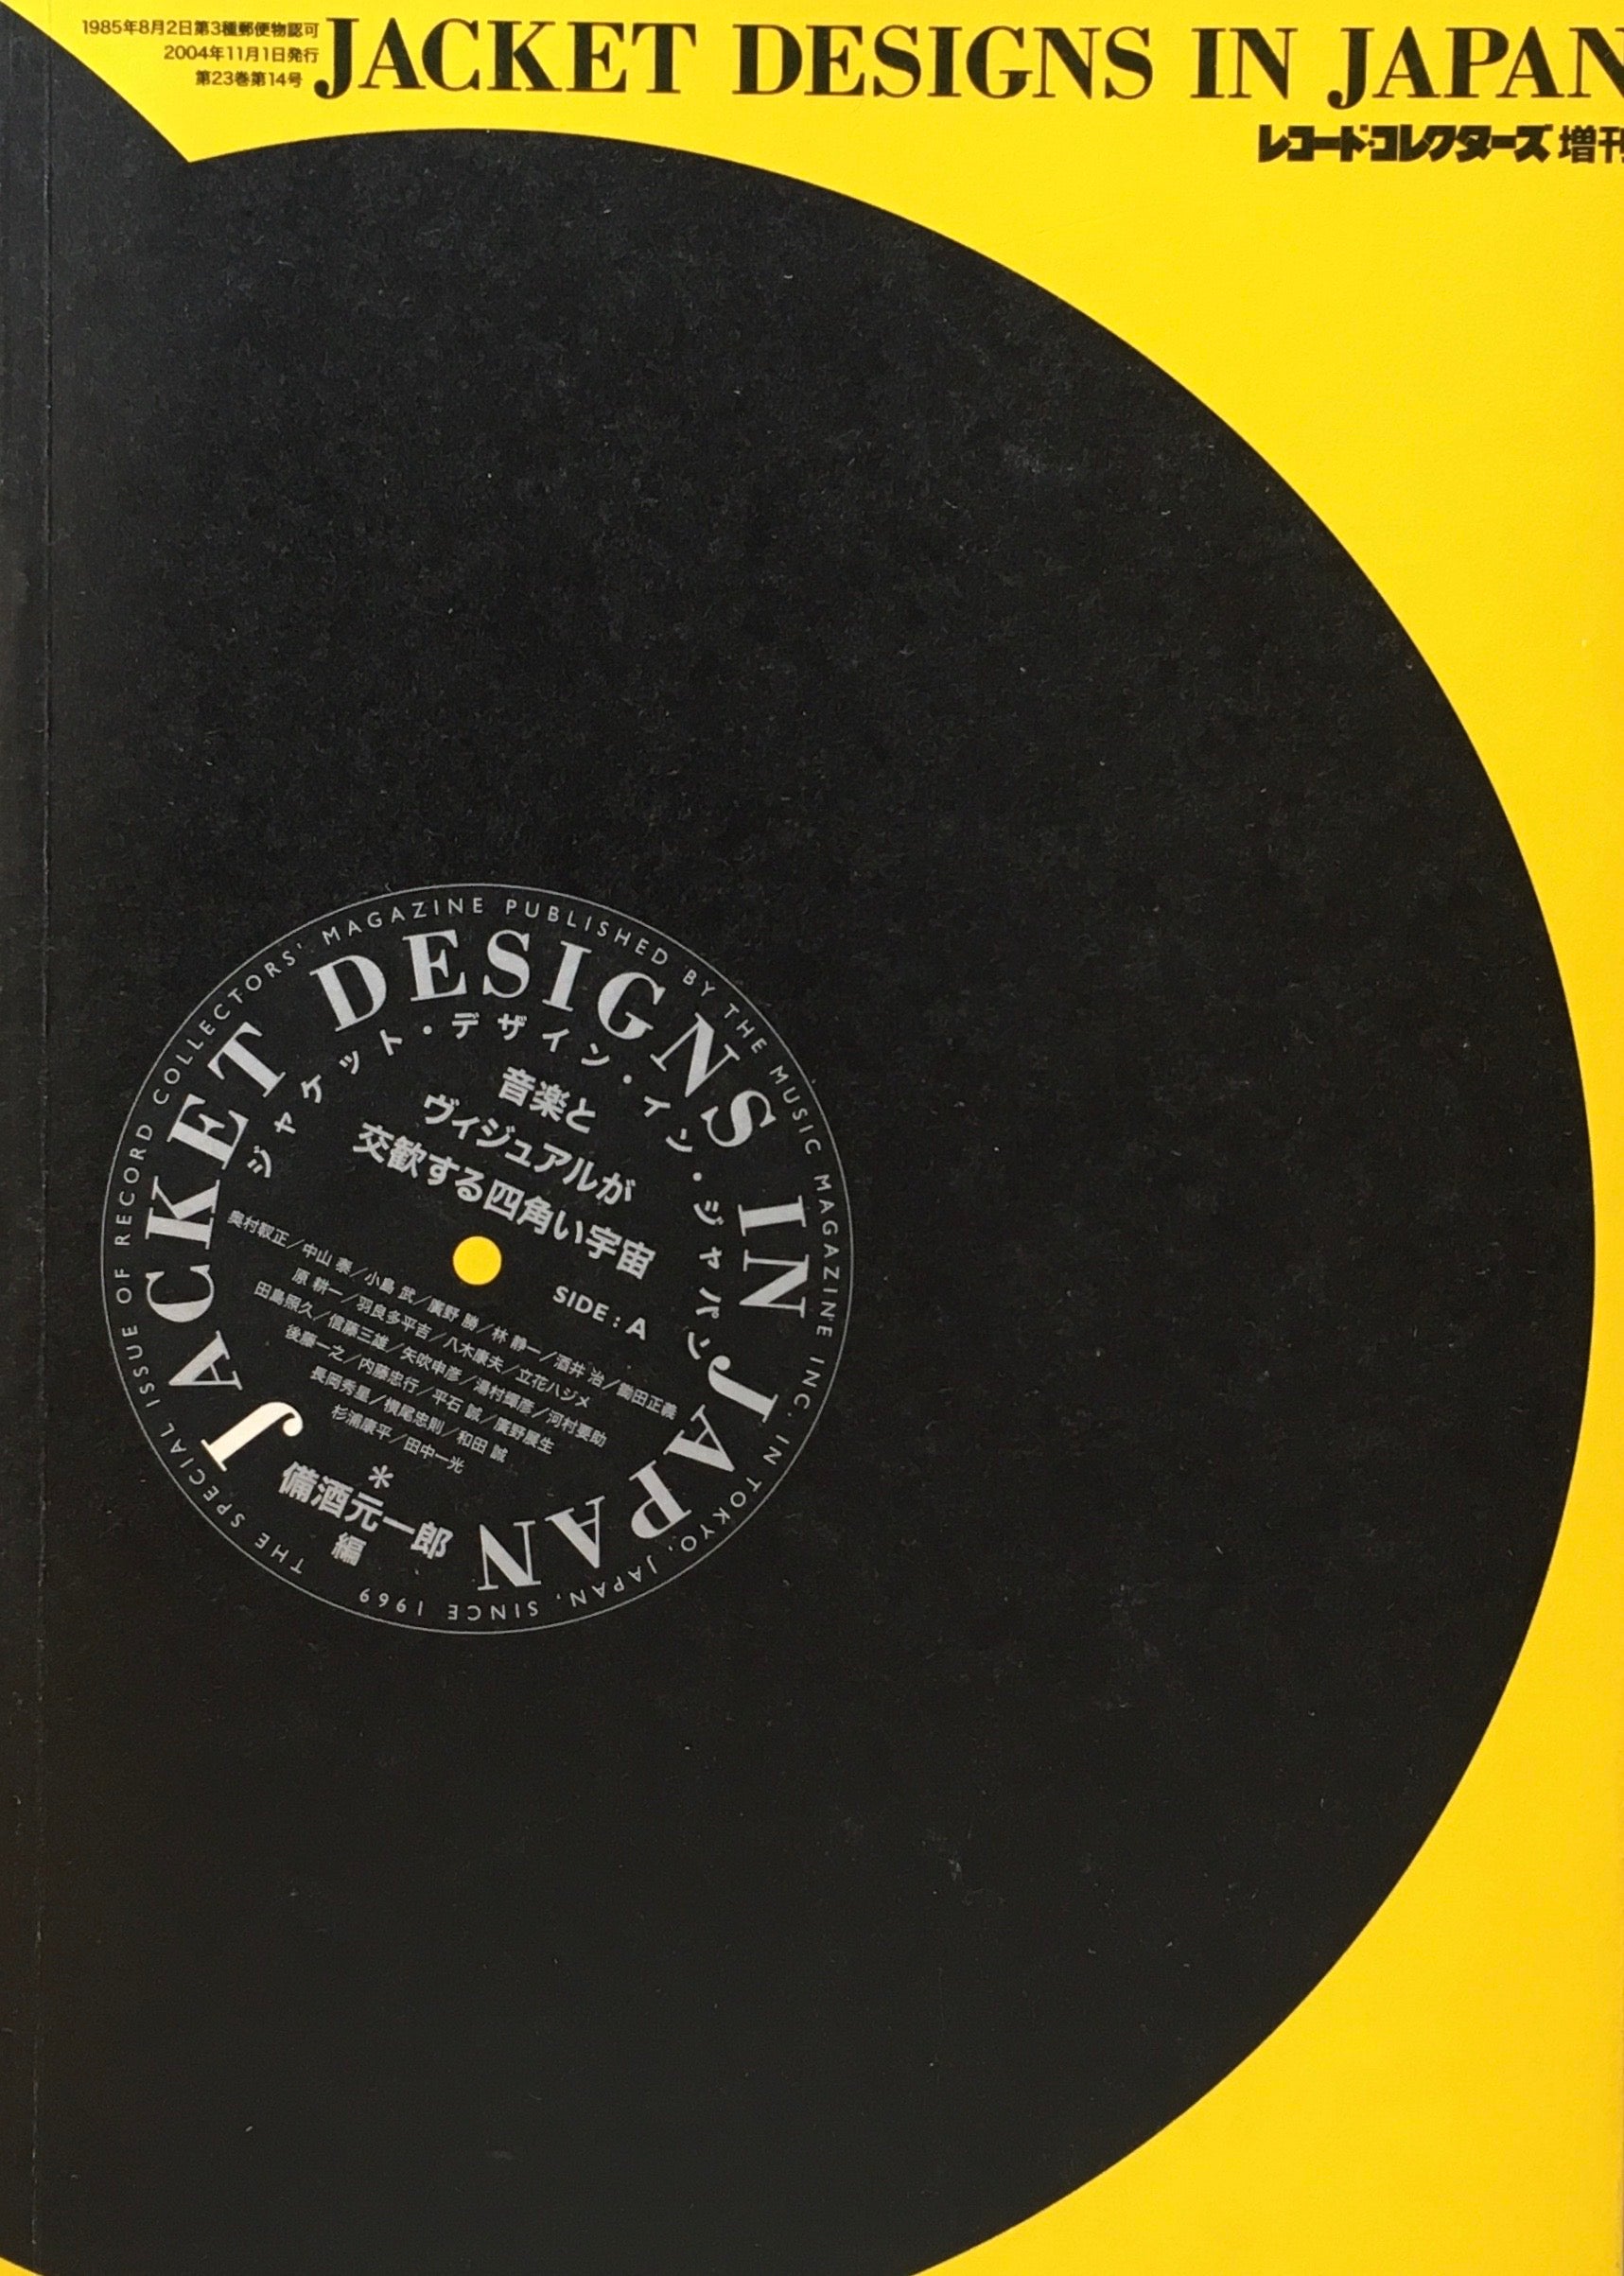 レコード・コレクターズ増刊　ジャケット・デザイン・イン・ジャパン　音楽とヴィジュアルが交歓する四角い宇宙